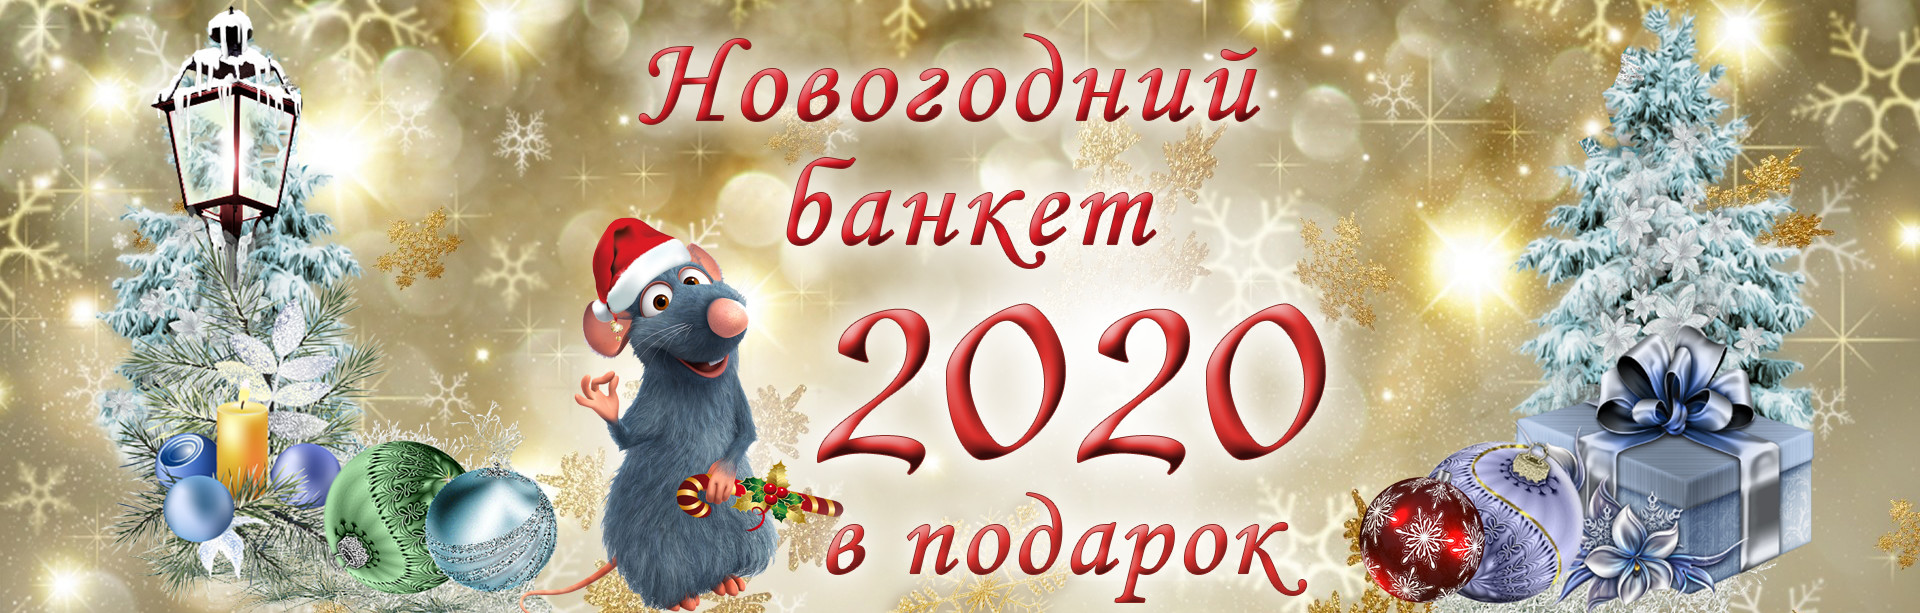    "  2020  ""